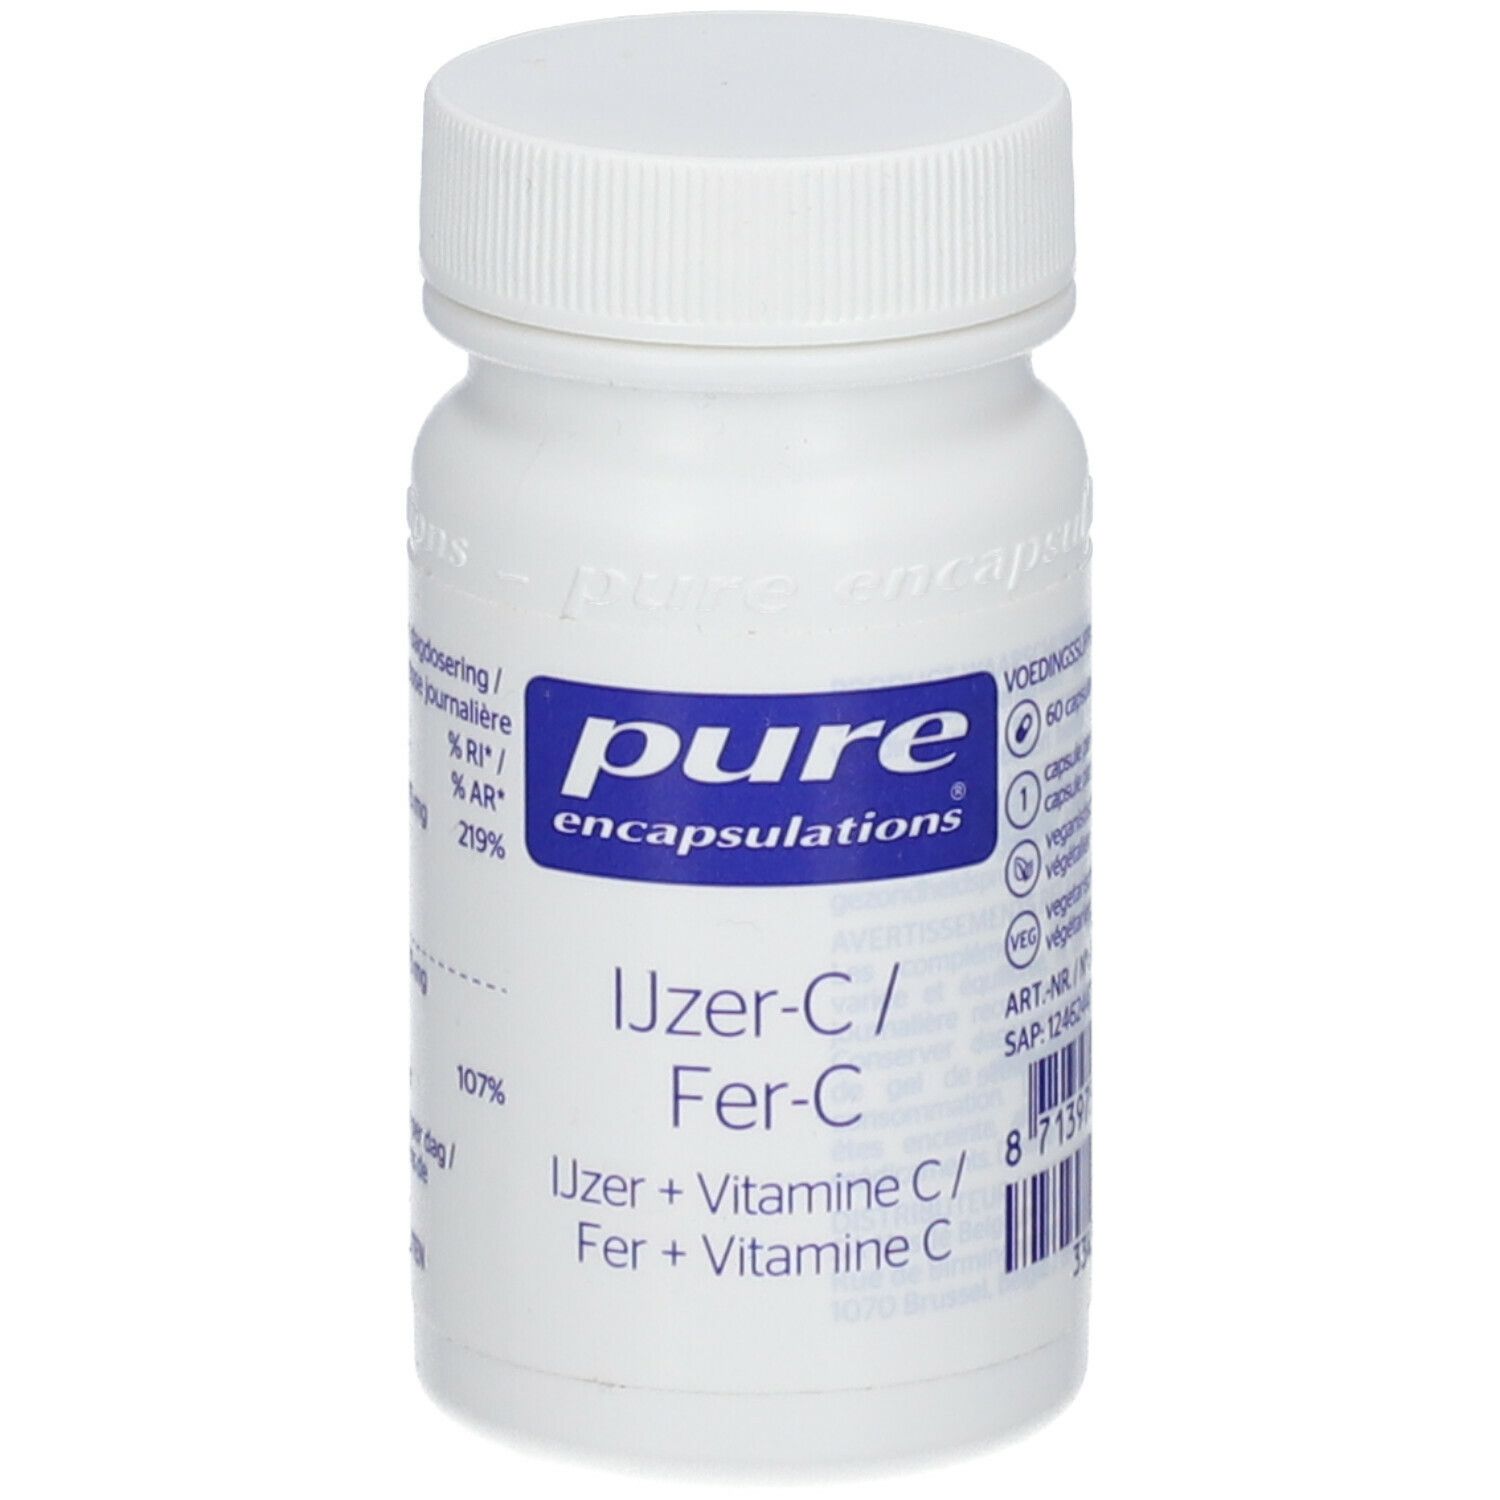 Pure encapsulations® Eisen + Vitamin C